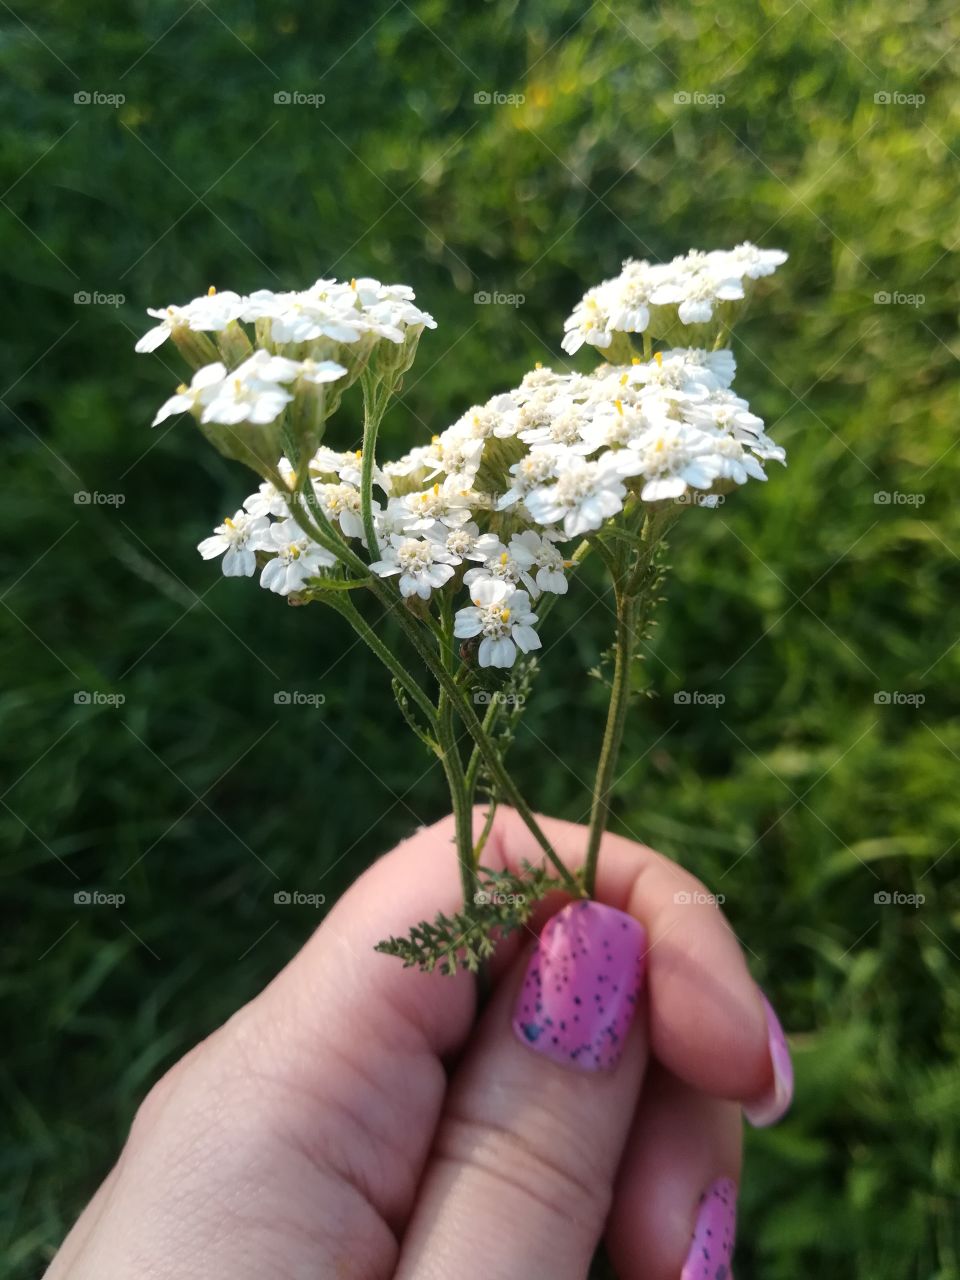 Flowers in hand, joy in heart